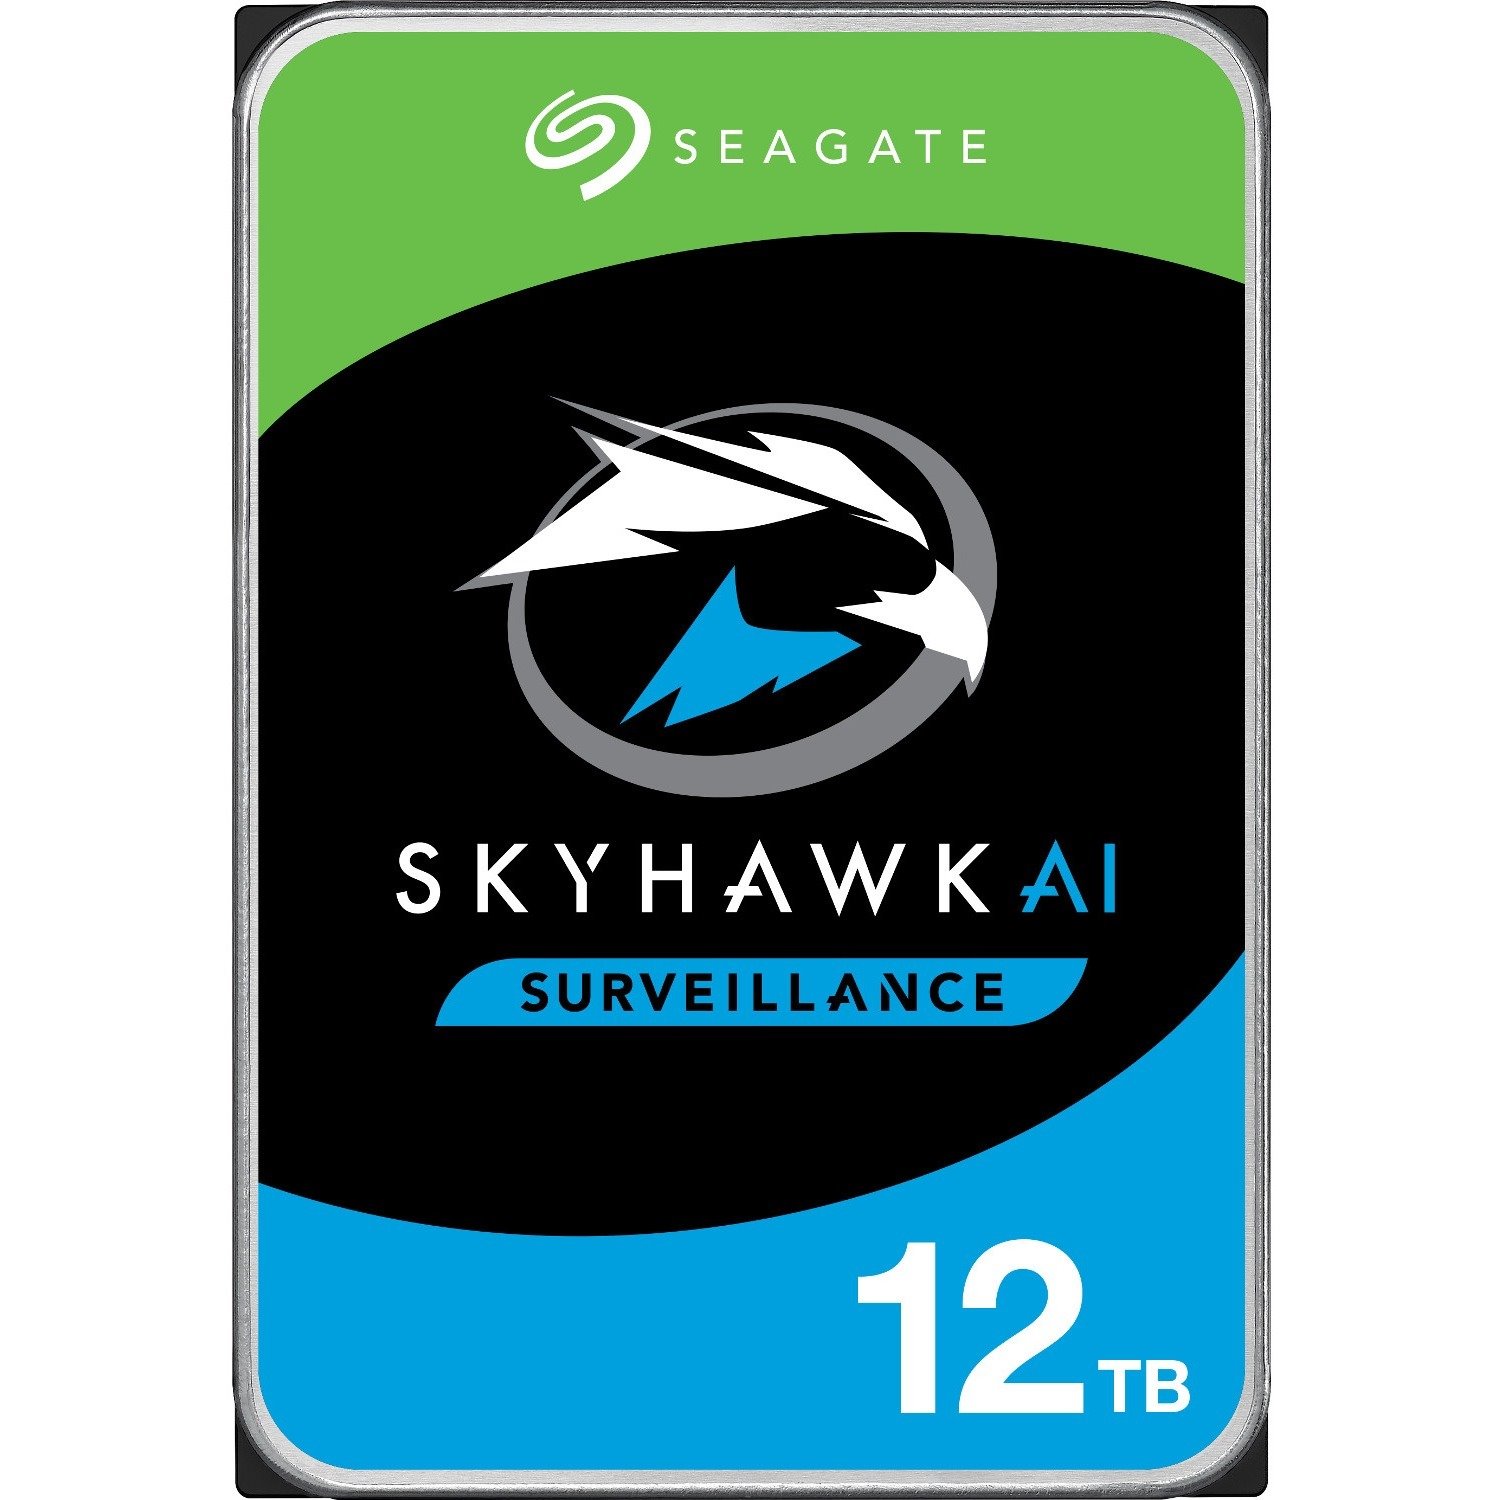 Seagate SkyHawk AI ST12000VE001 12 TB Hard Drive - 3.5" Internal - SATA (SATA/600)